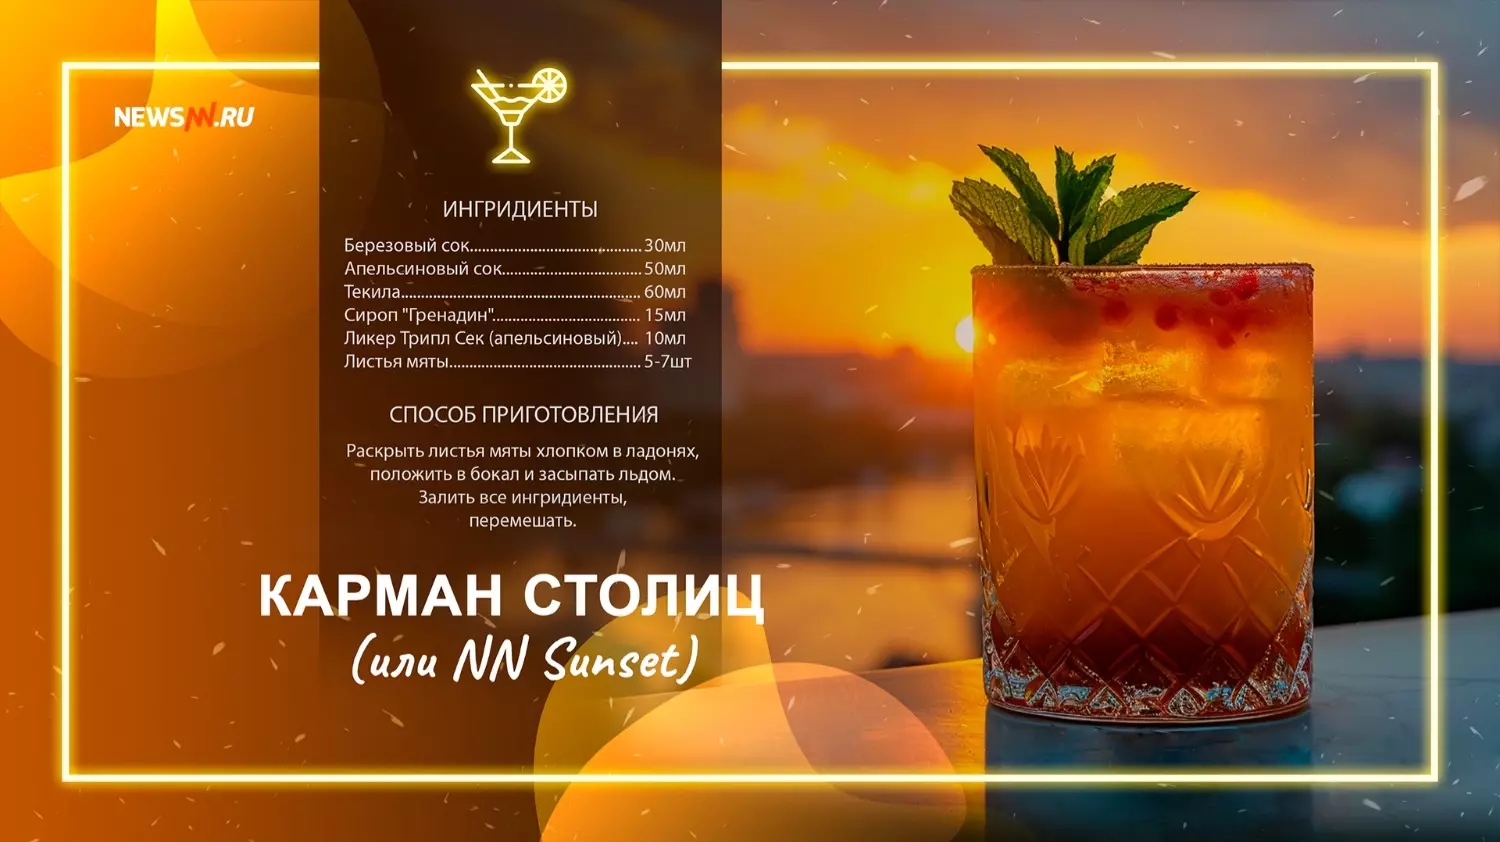 Нижегородский коктейль «Карман столиц или NN Sunset»